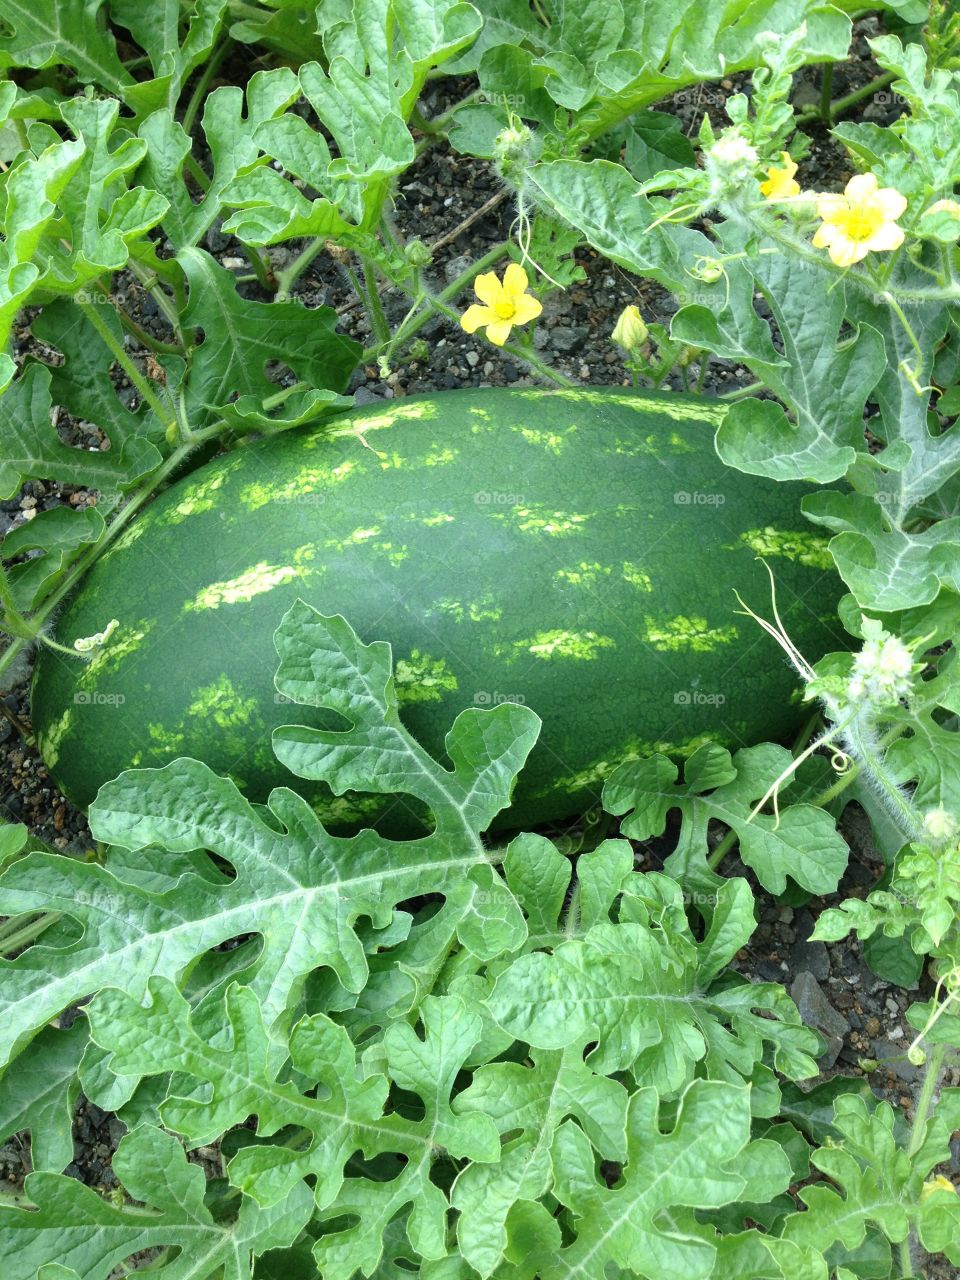 Home grown watermelon 